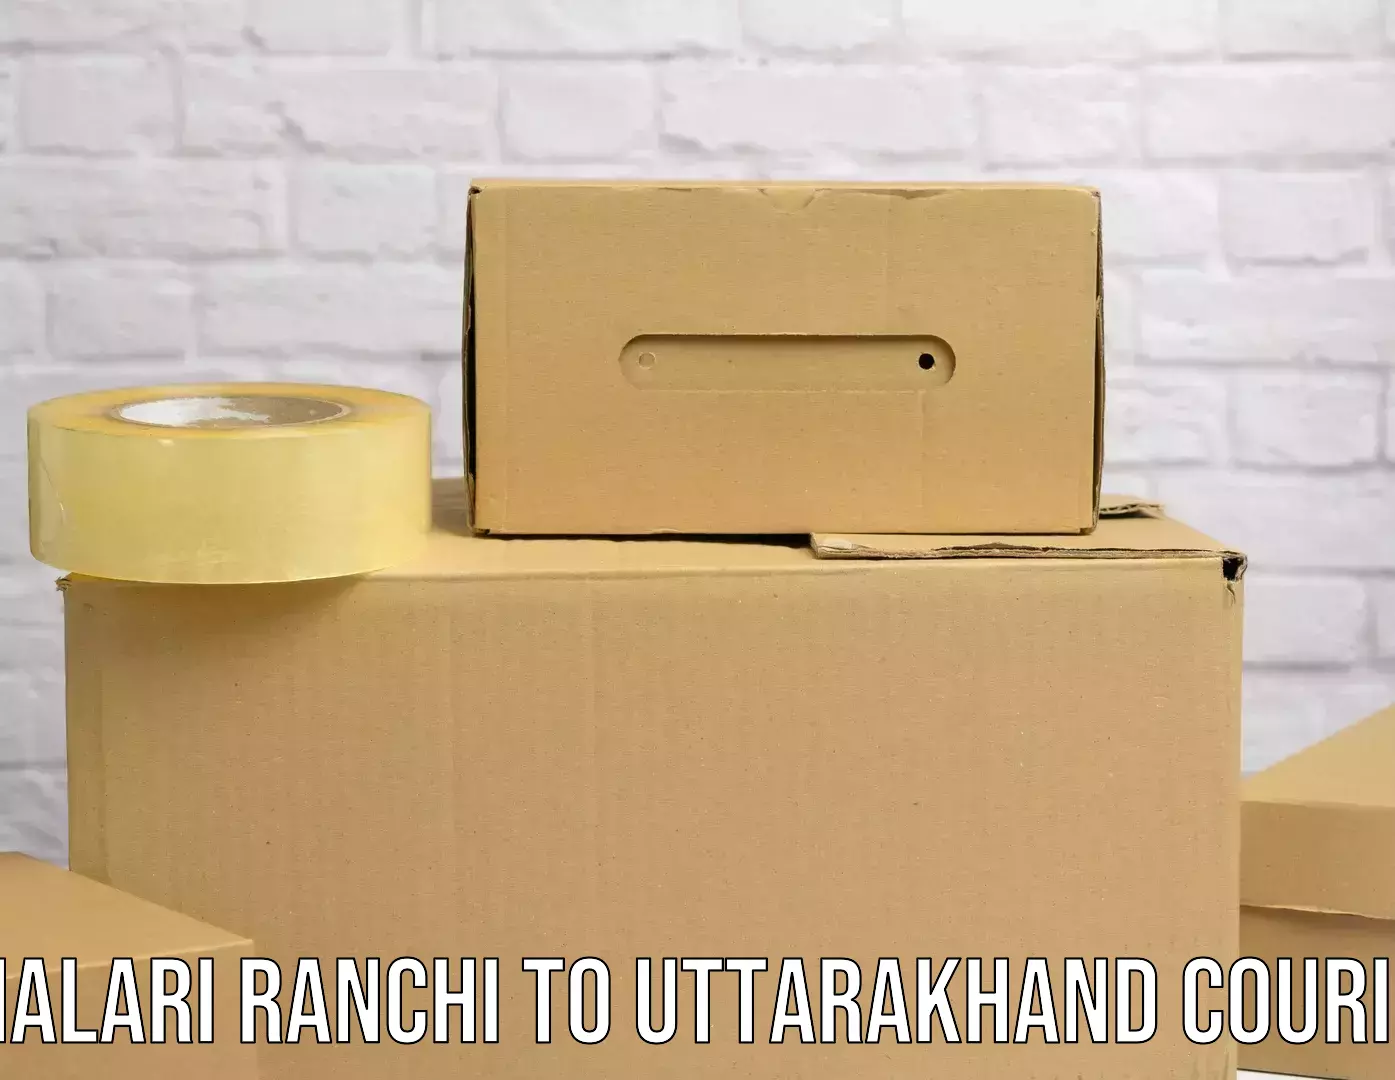 Overnight delivery Khalari Ranchi to Rishikesh